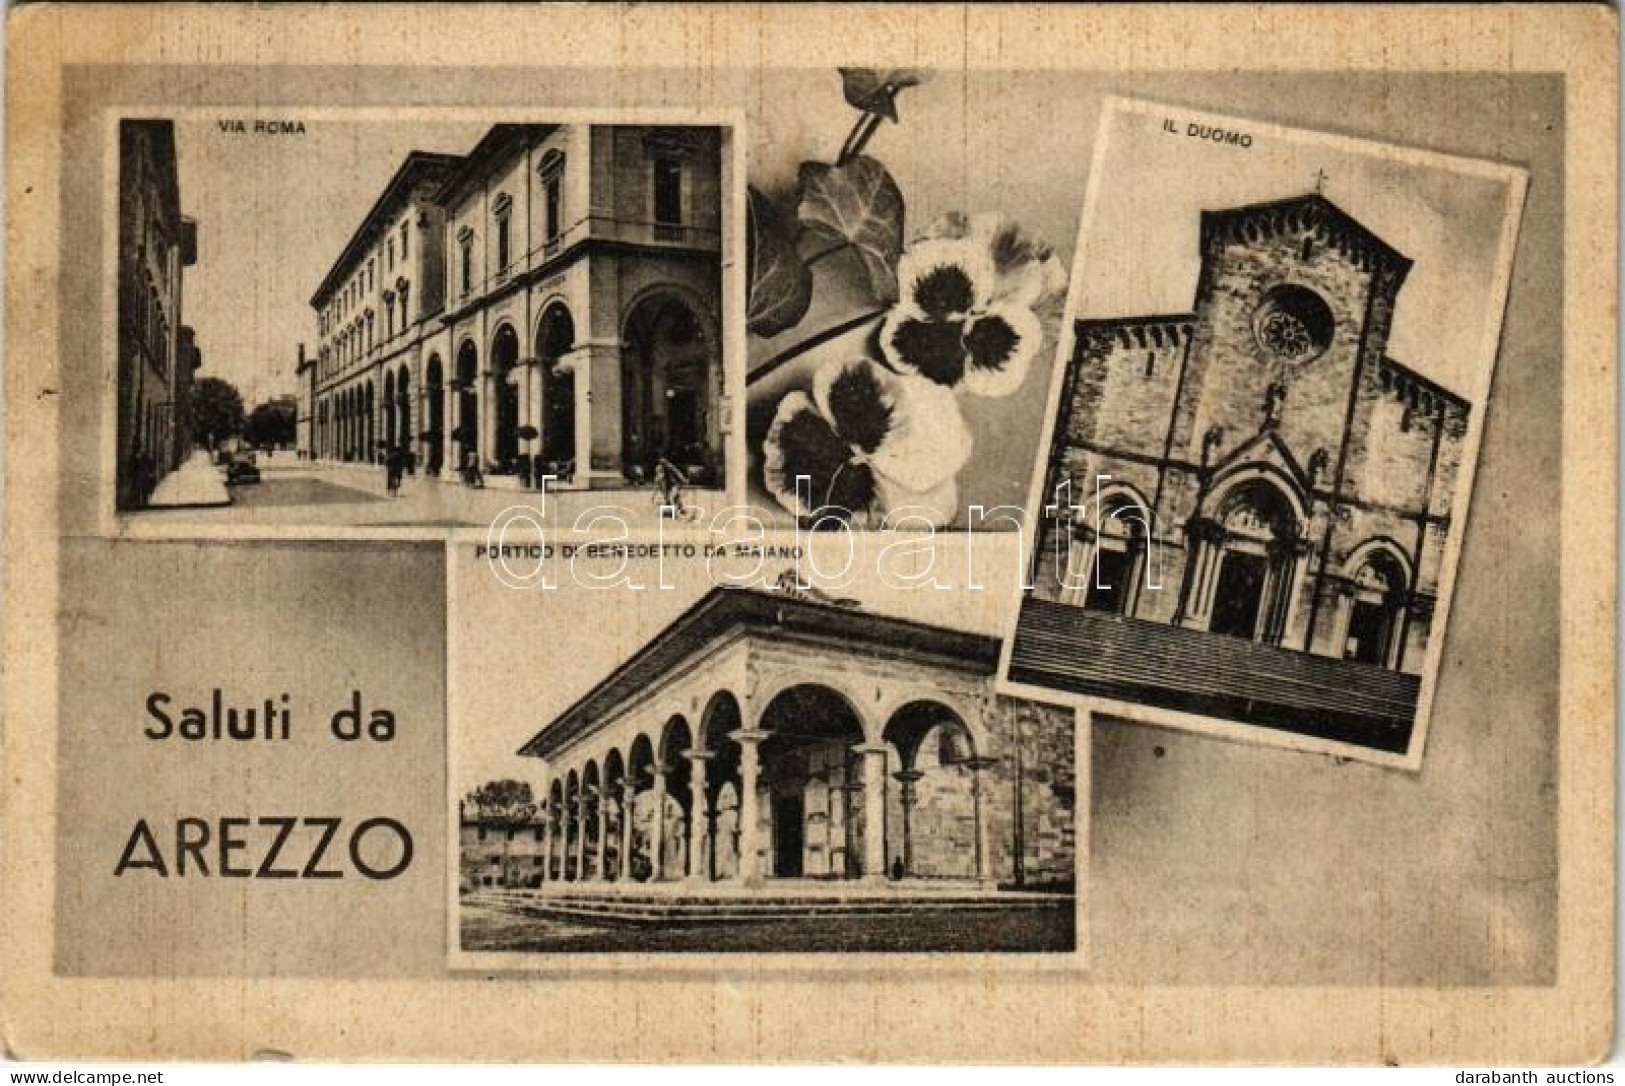 T2/T3 1942 Arezzo, Via Roma, Il Duomo, Portico Di Benedetto Da Maiano / Street View, Automobile, Bicycle, Cathedral. Ed. - Ohne Zuordnung